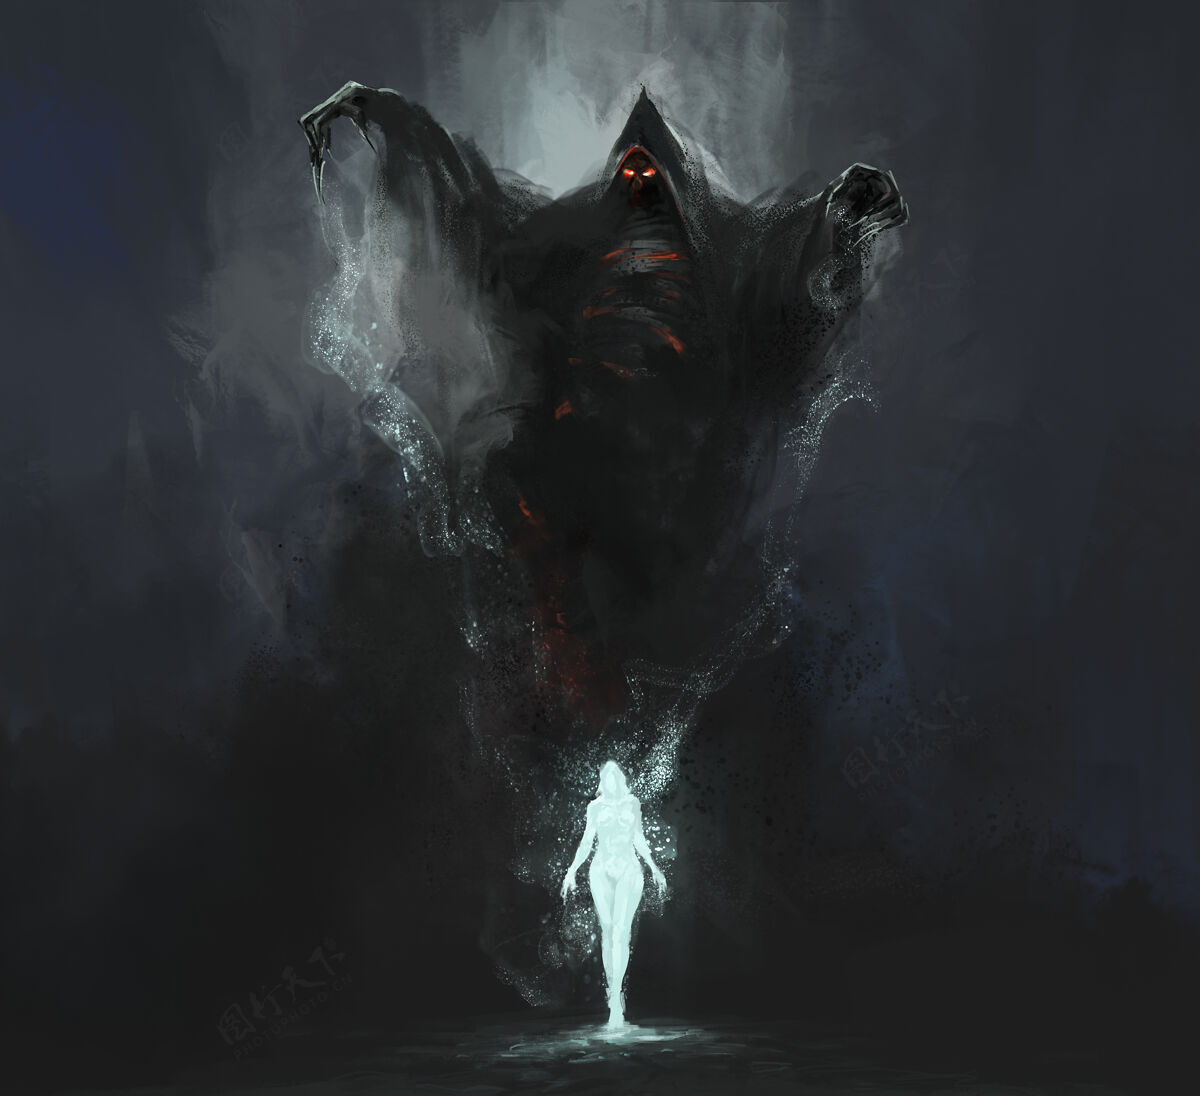 噩梦精灵是从死亡的魔法中诞生的 魔法插图 3d插图精灵冒险恐怖